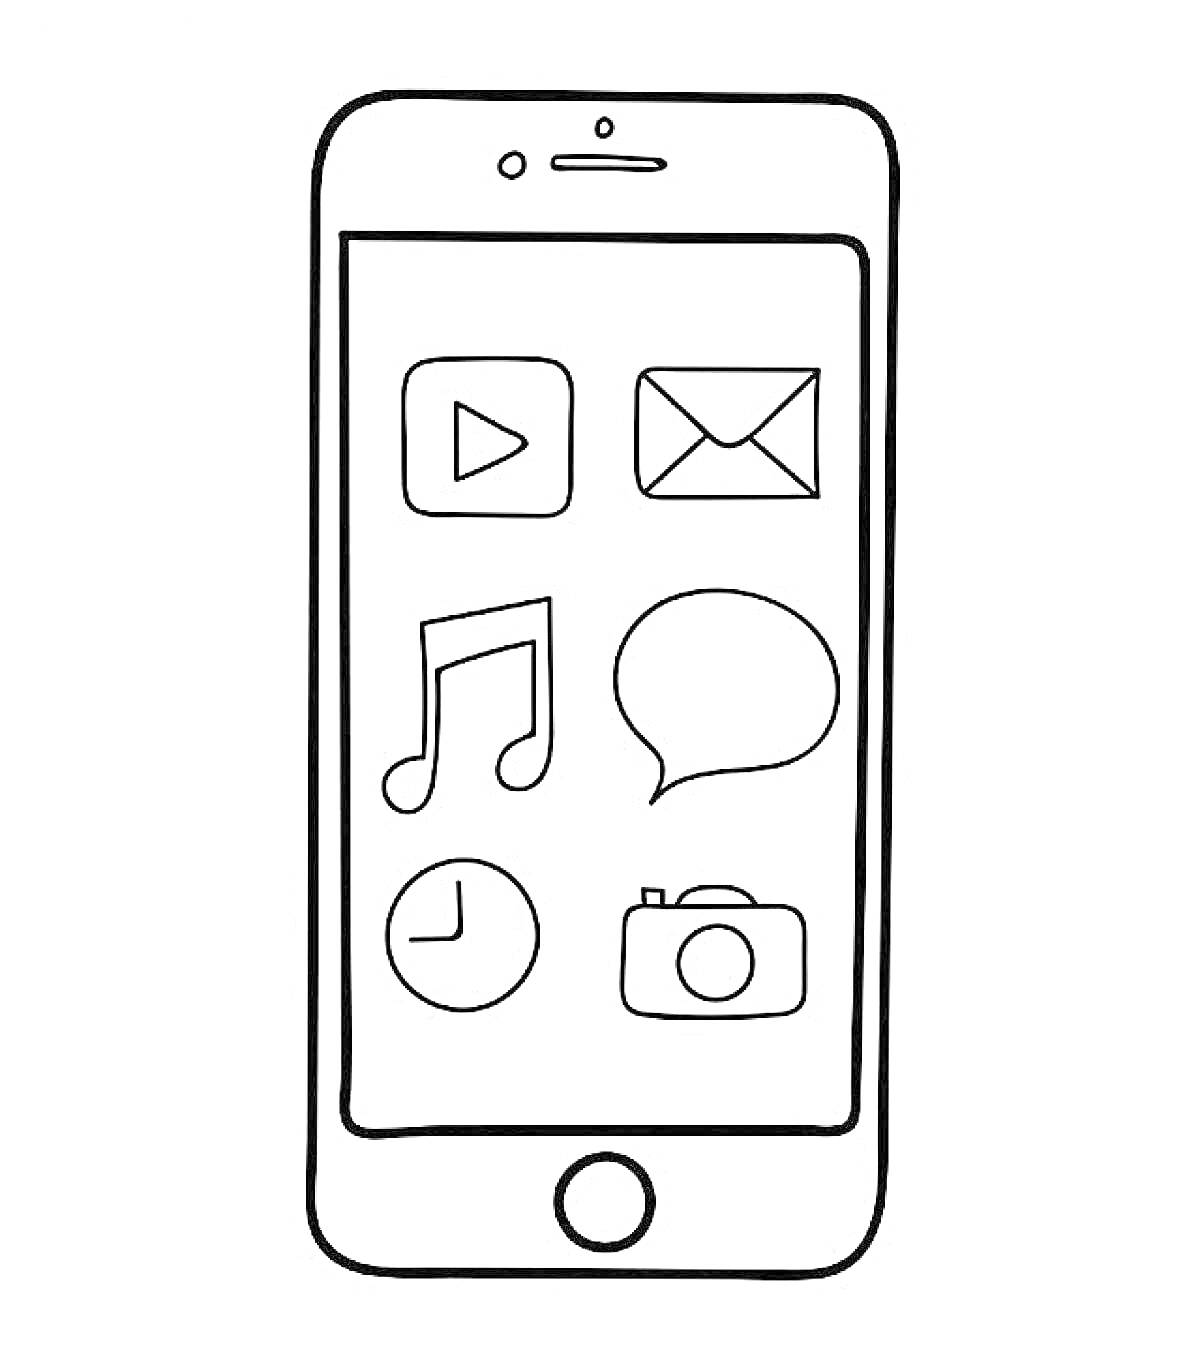 Мобильный телефон с иконками приложения (плей, письмо, музыка, чат, часы, камера)